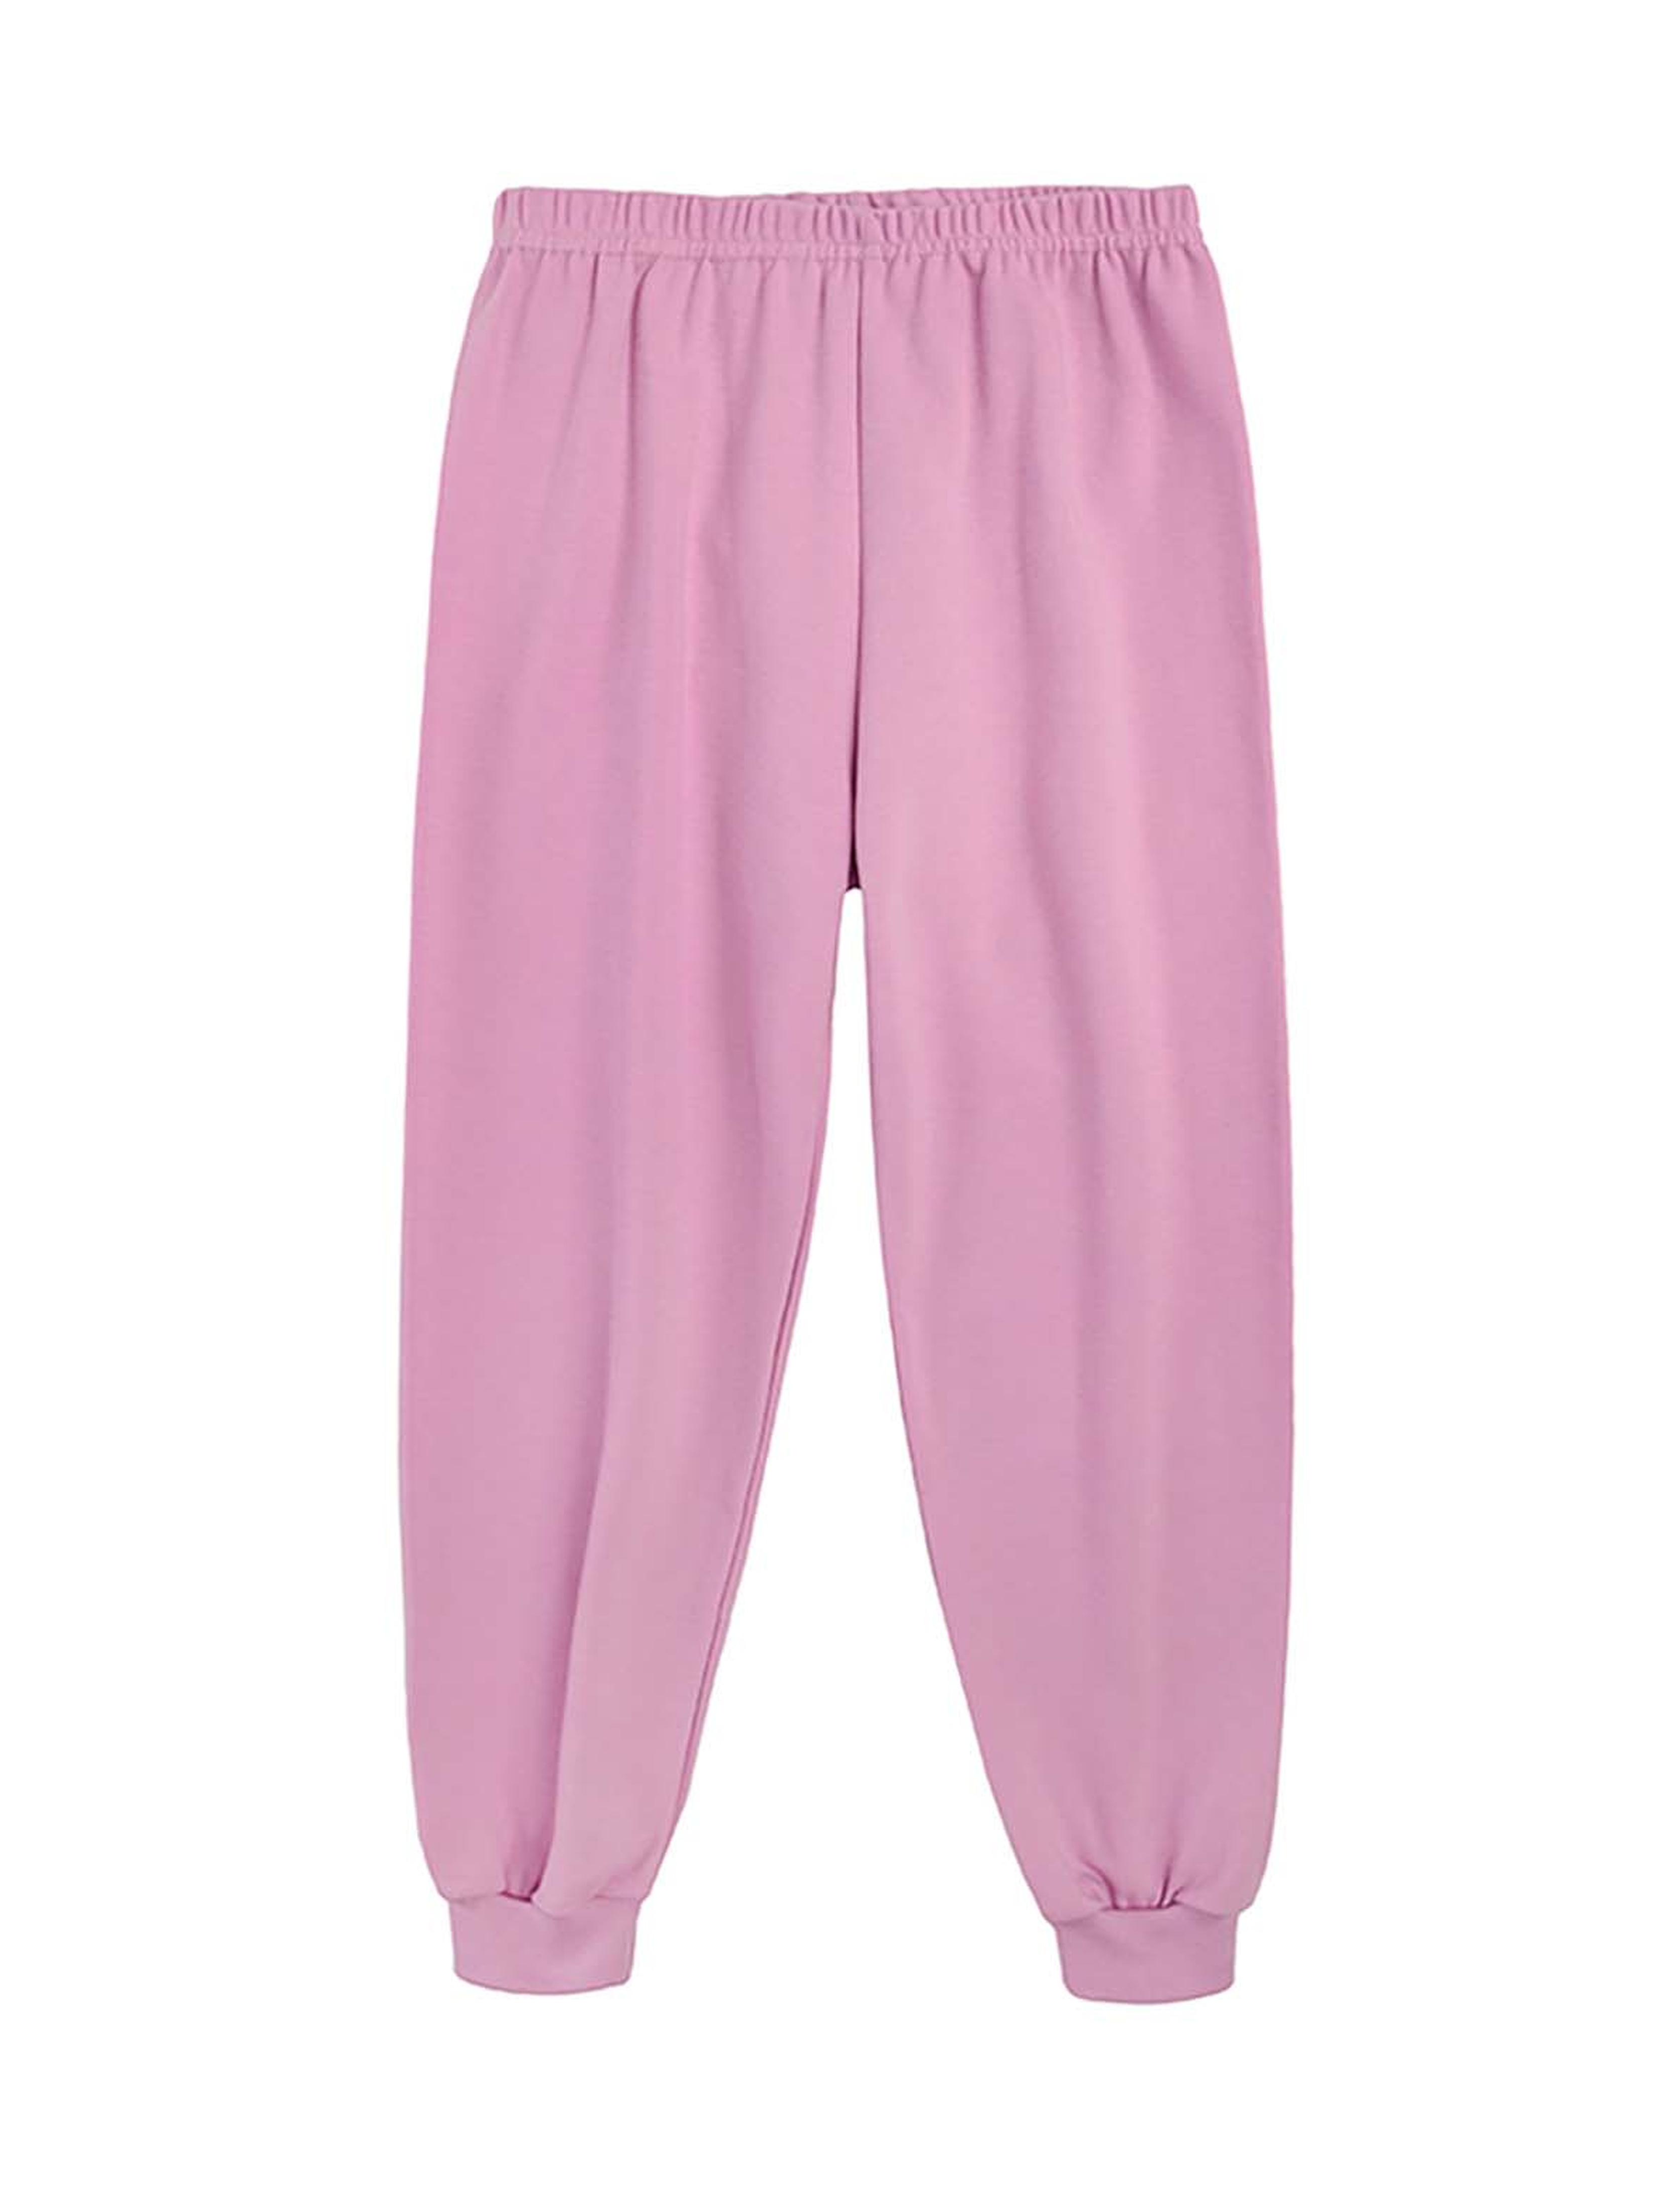 Dziewczęca piżama ciepła szaro-fioletowa Tup Tup- miś